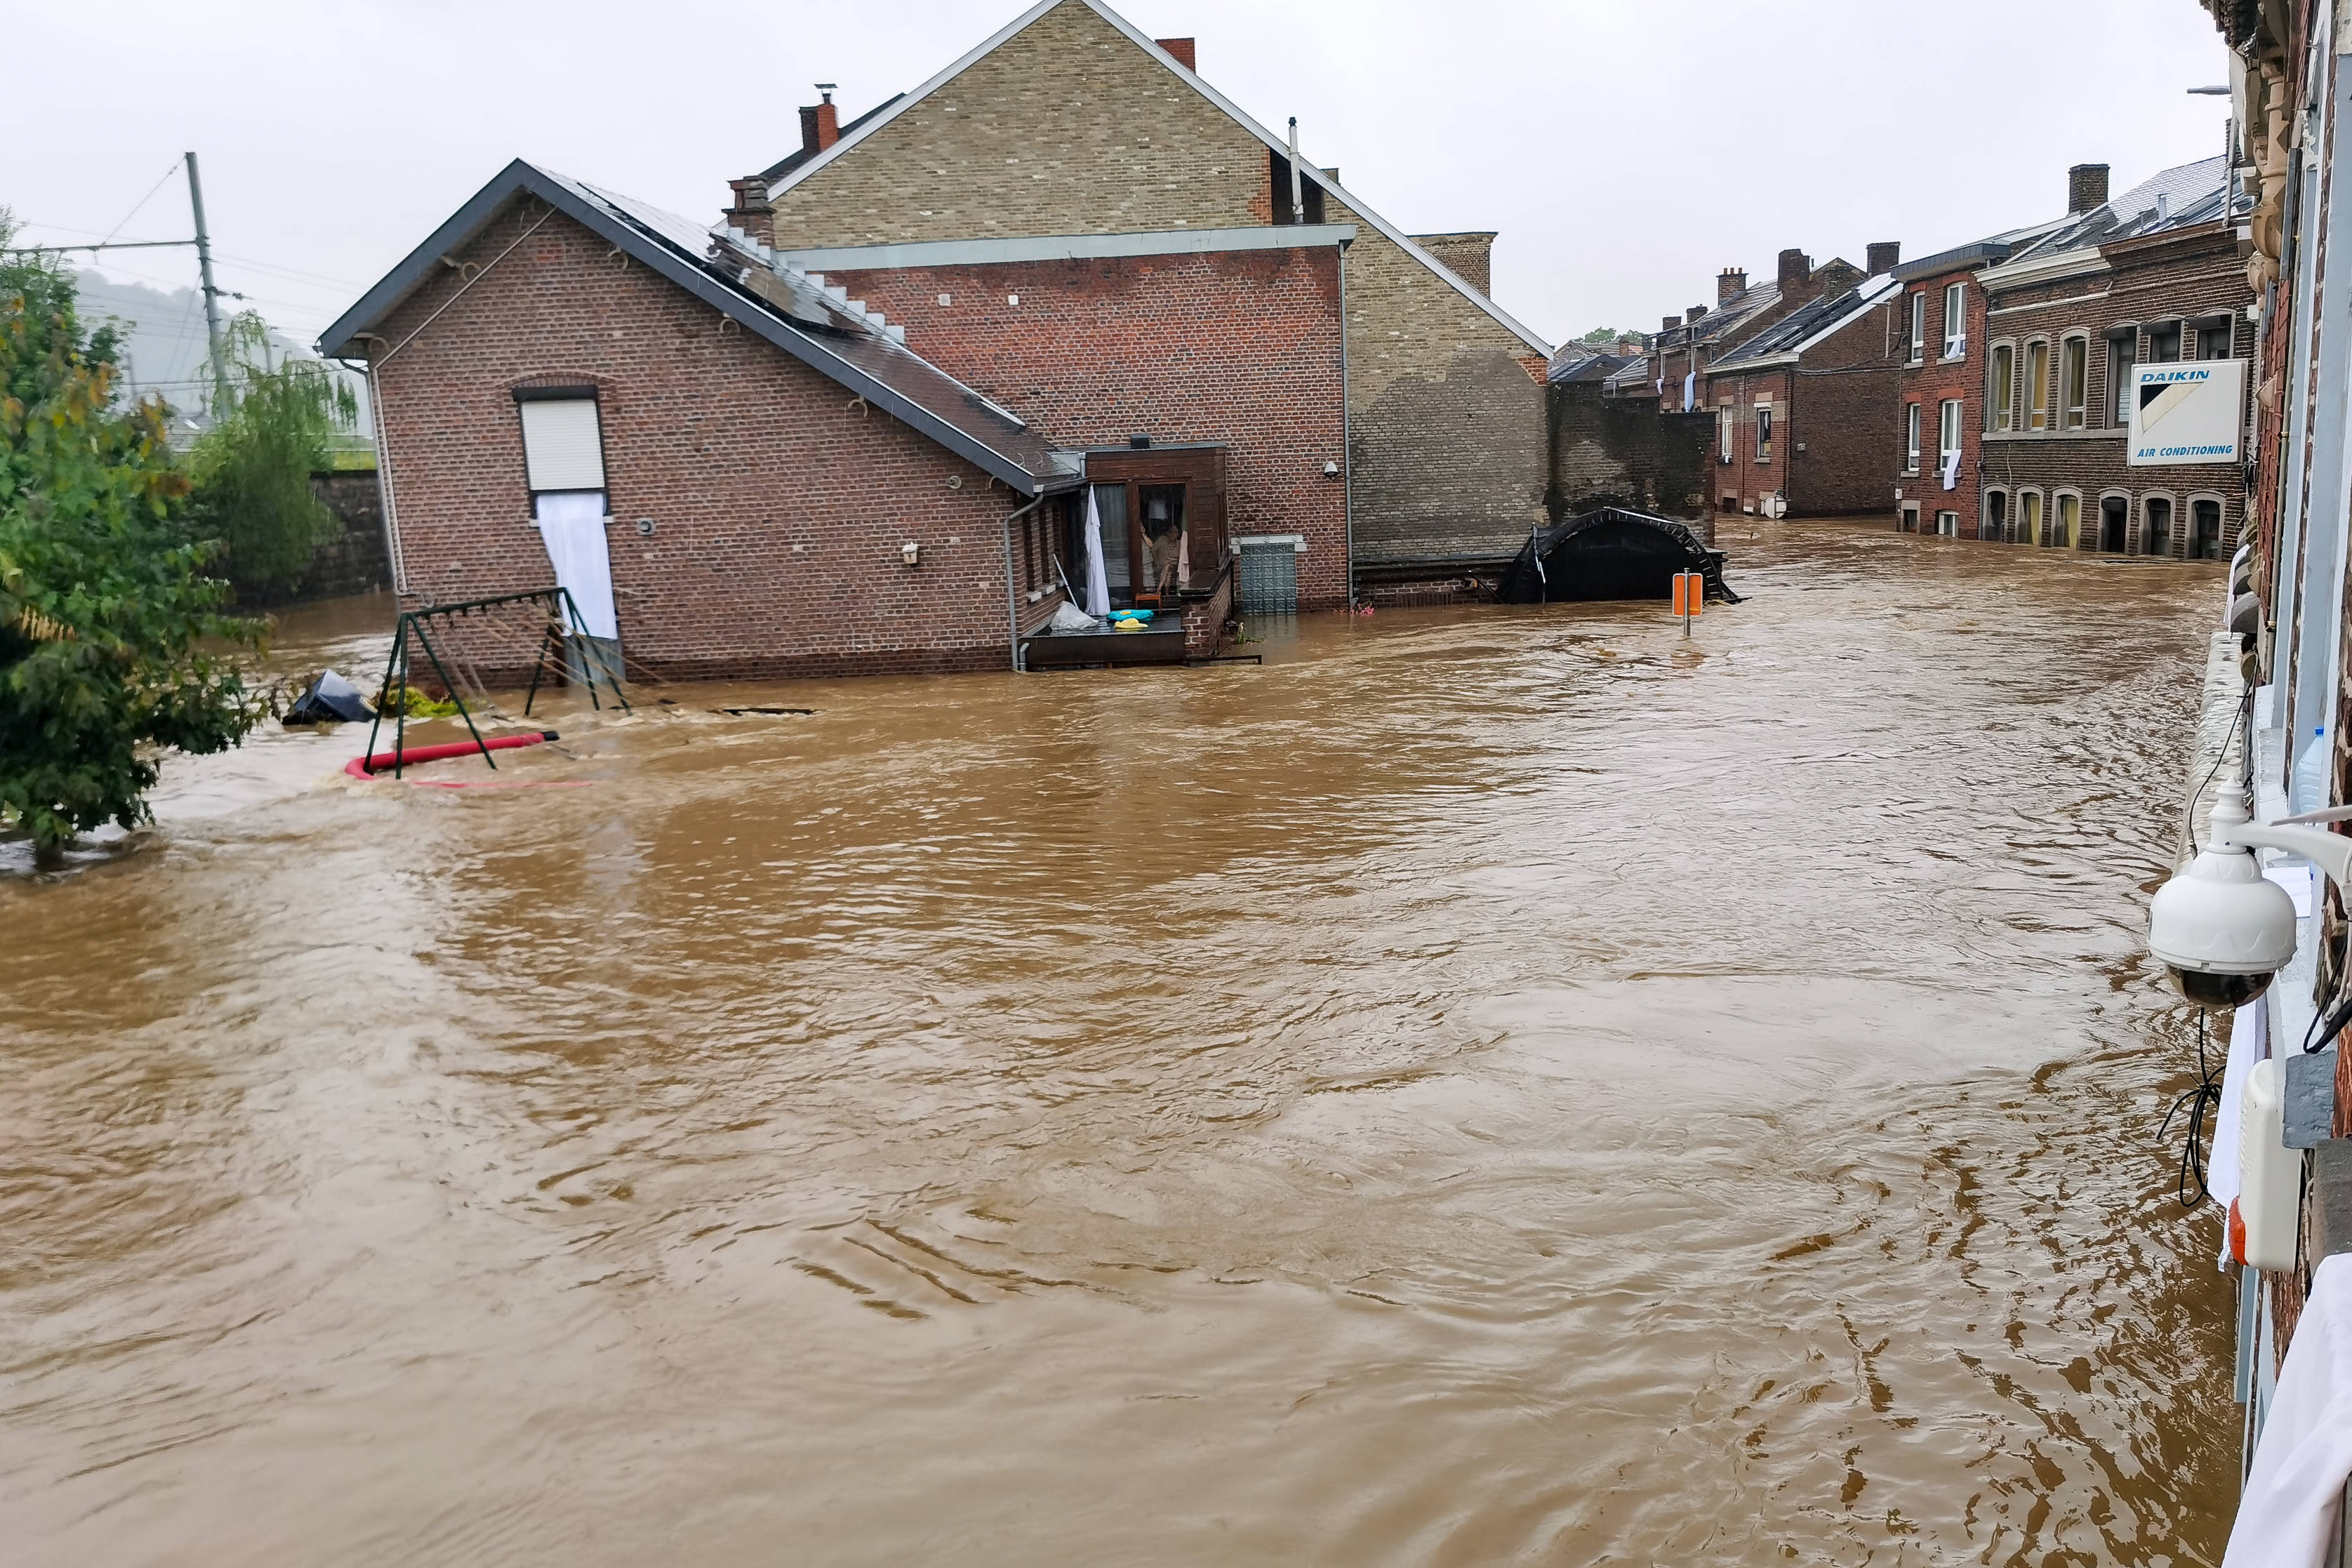 这是7月15日在比利时列日拍摄的被洪水淹没的街道(手机照片.